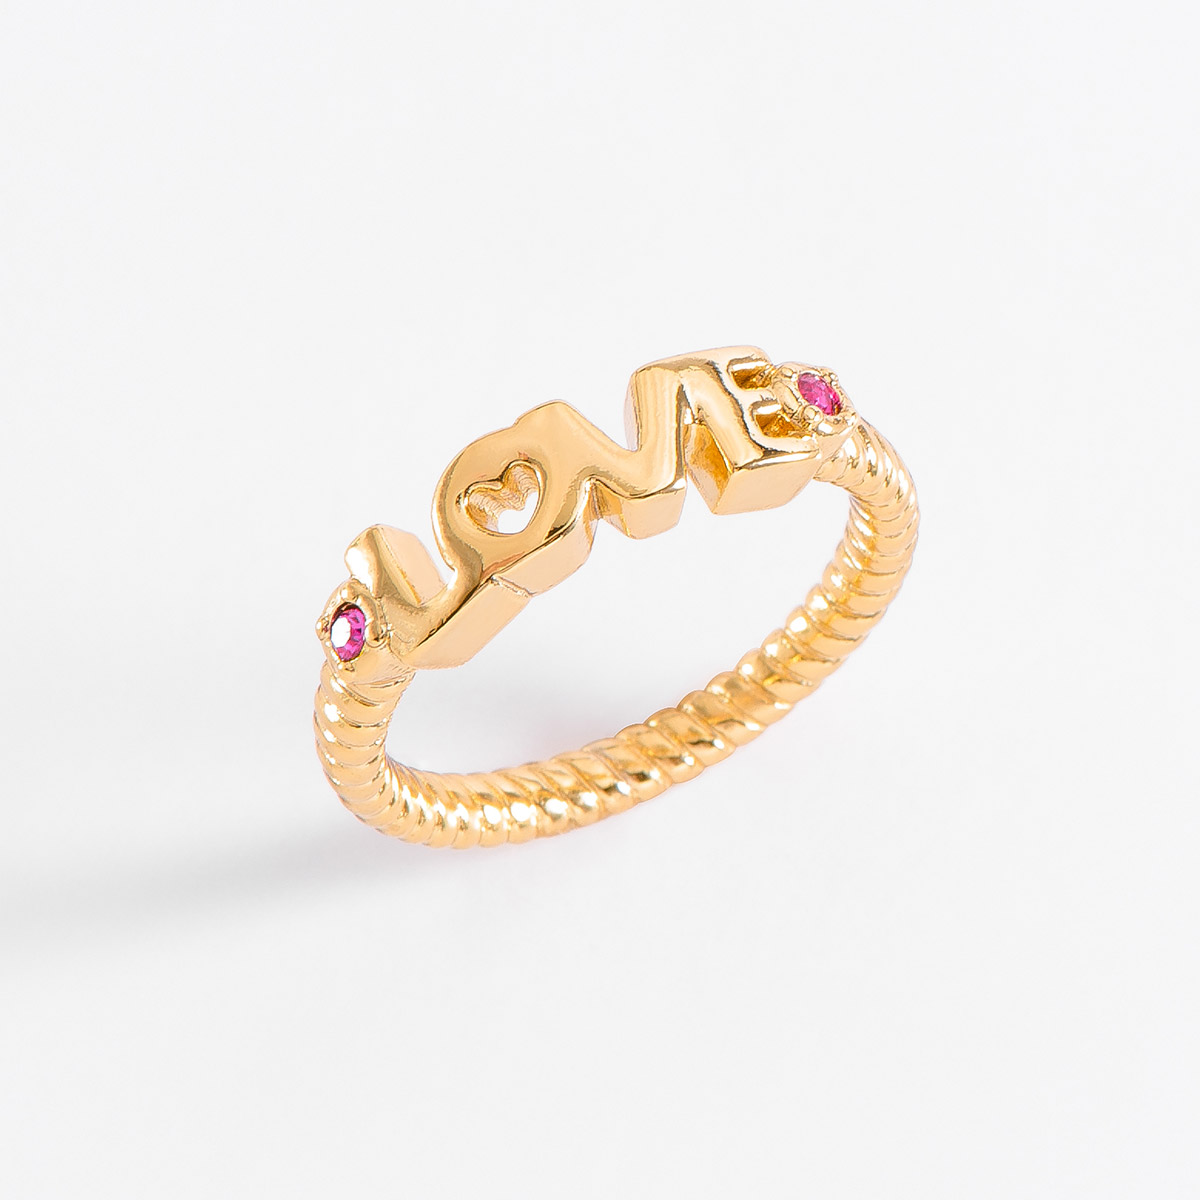 Coqueto anillo con la palabra “LOVE” en baño de oro, incrustado con dos piedras en tono fucsia. Combina tu set de collar y pulsera
-        Anillo
-        Medidas del 6 al 9 
-        Baño de Oro 18k
-        Piedras en tono fucsia
